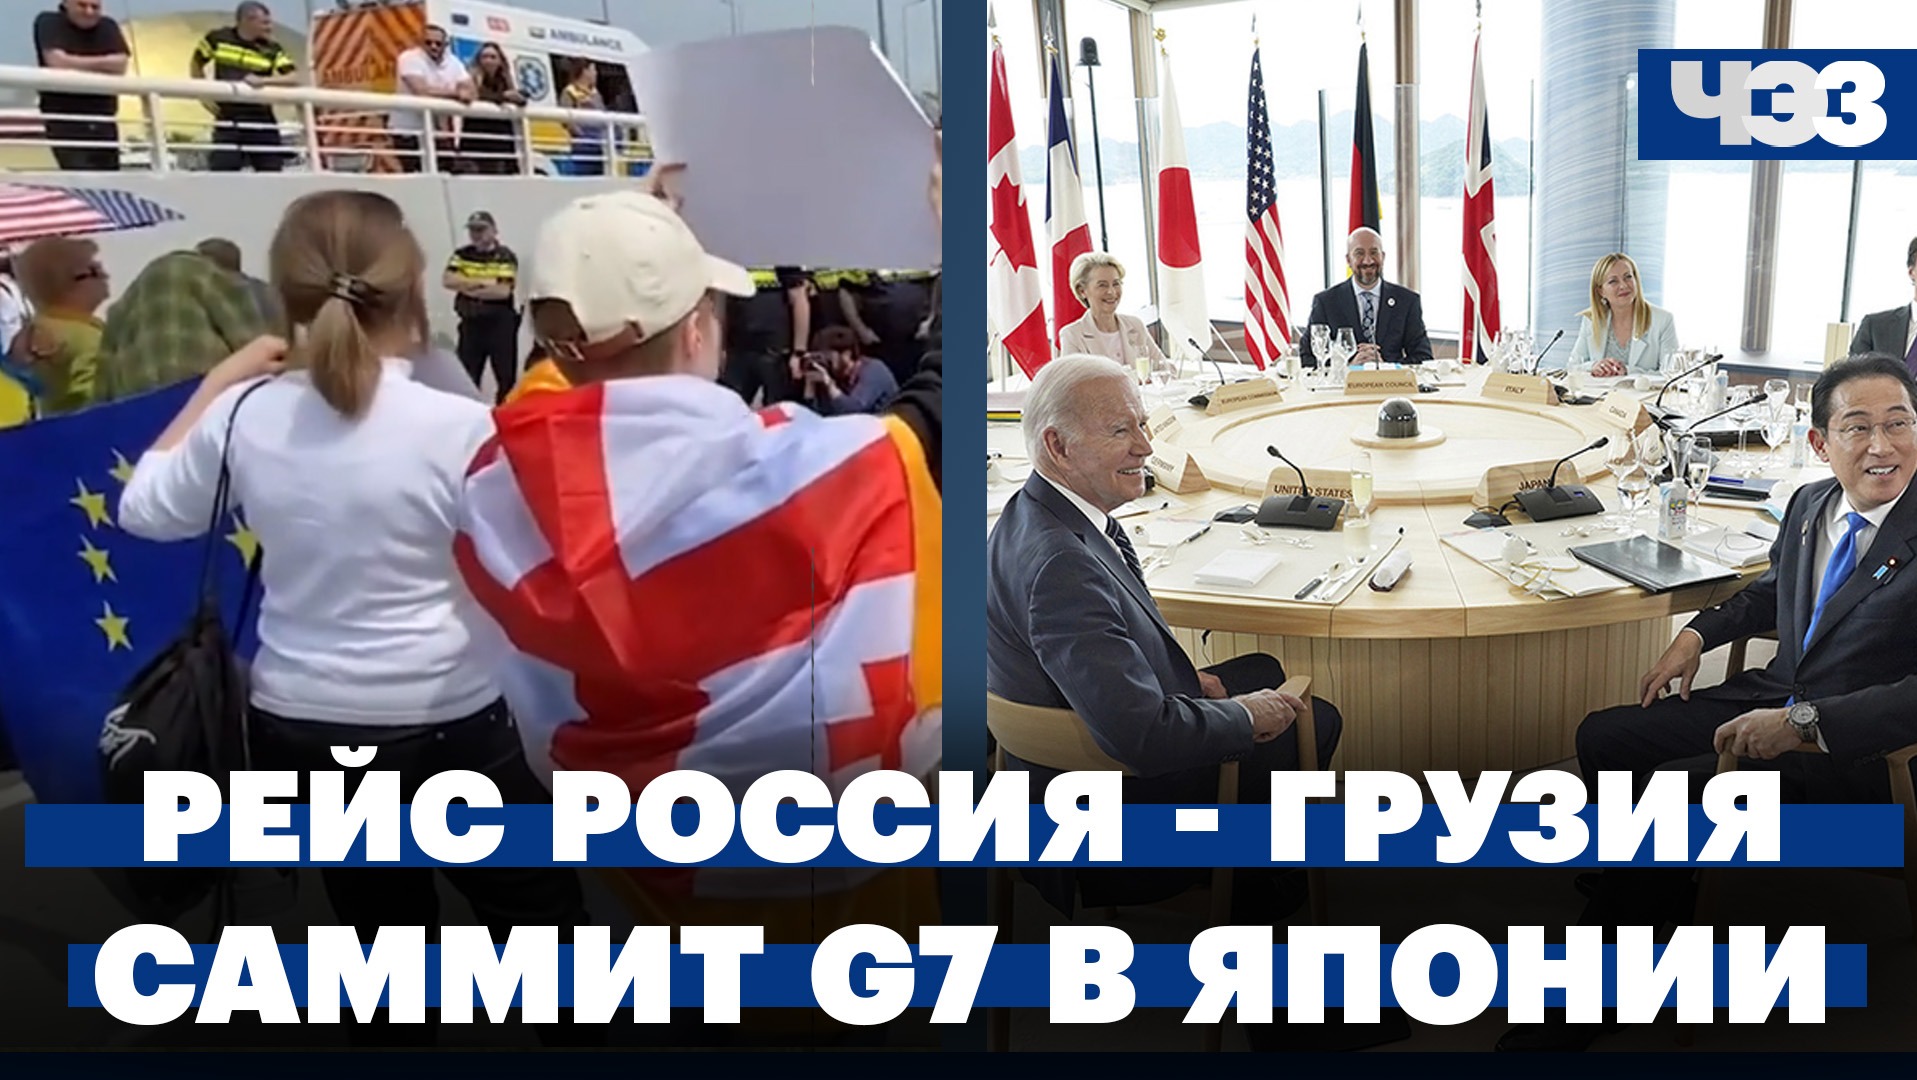 Саммит G7 в Японии: заявления, решения и санкции. Первый рейс из России в Грузию: как это было